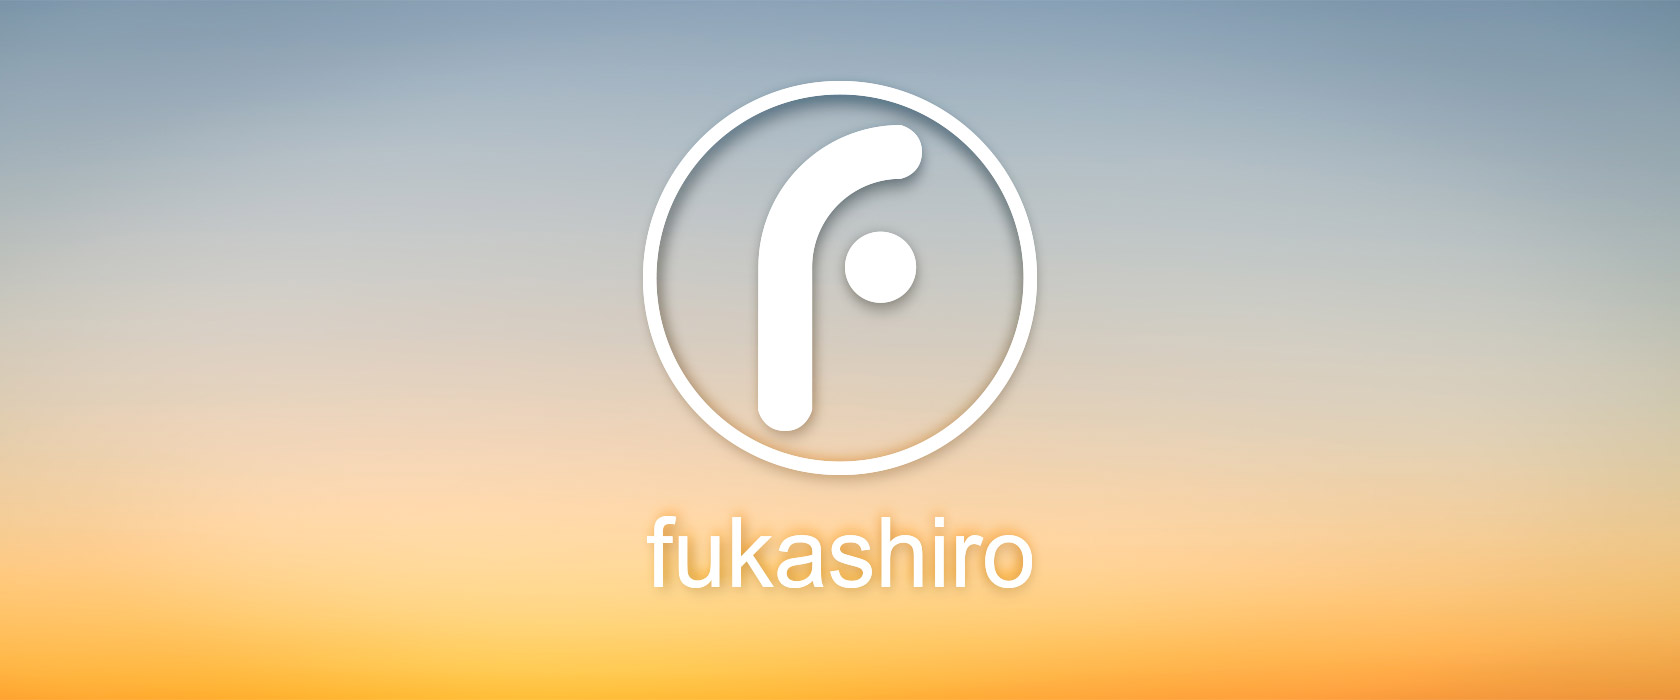 Fukashiro